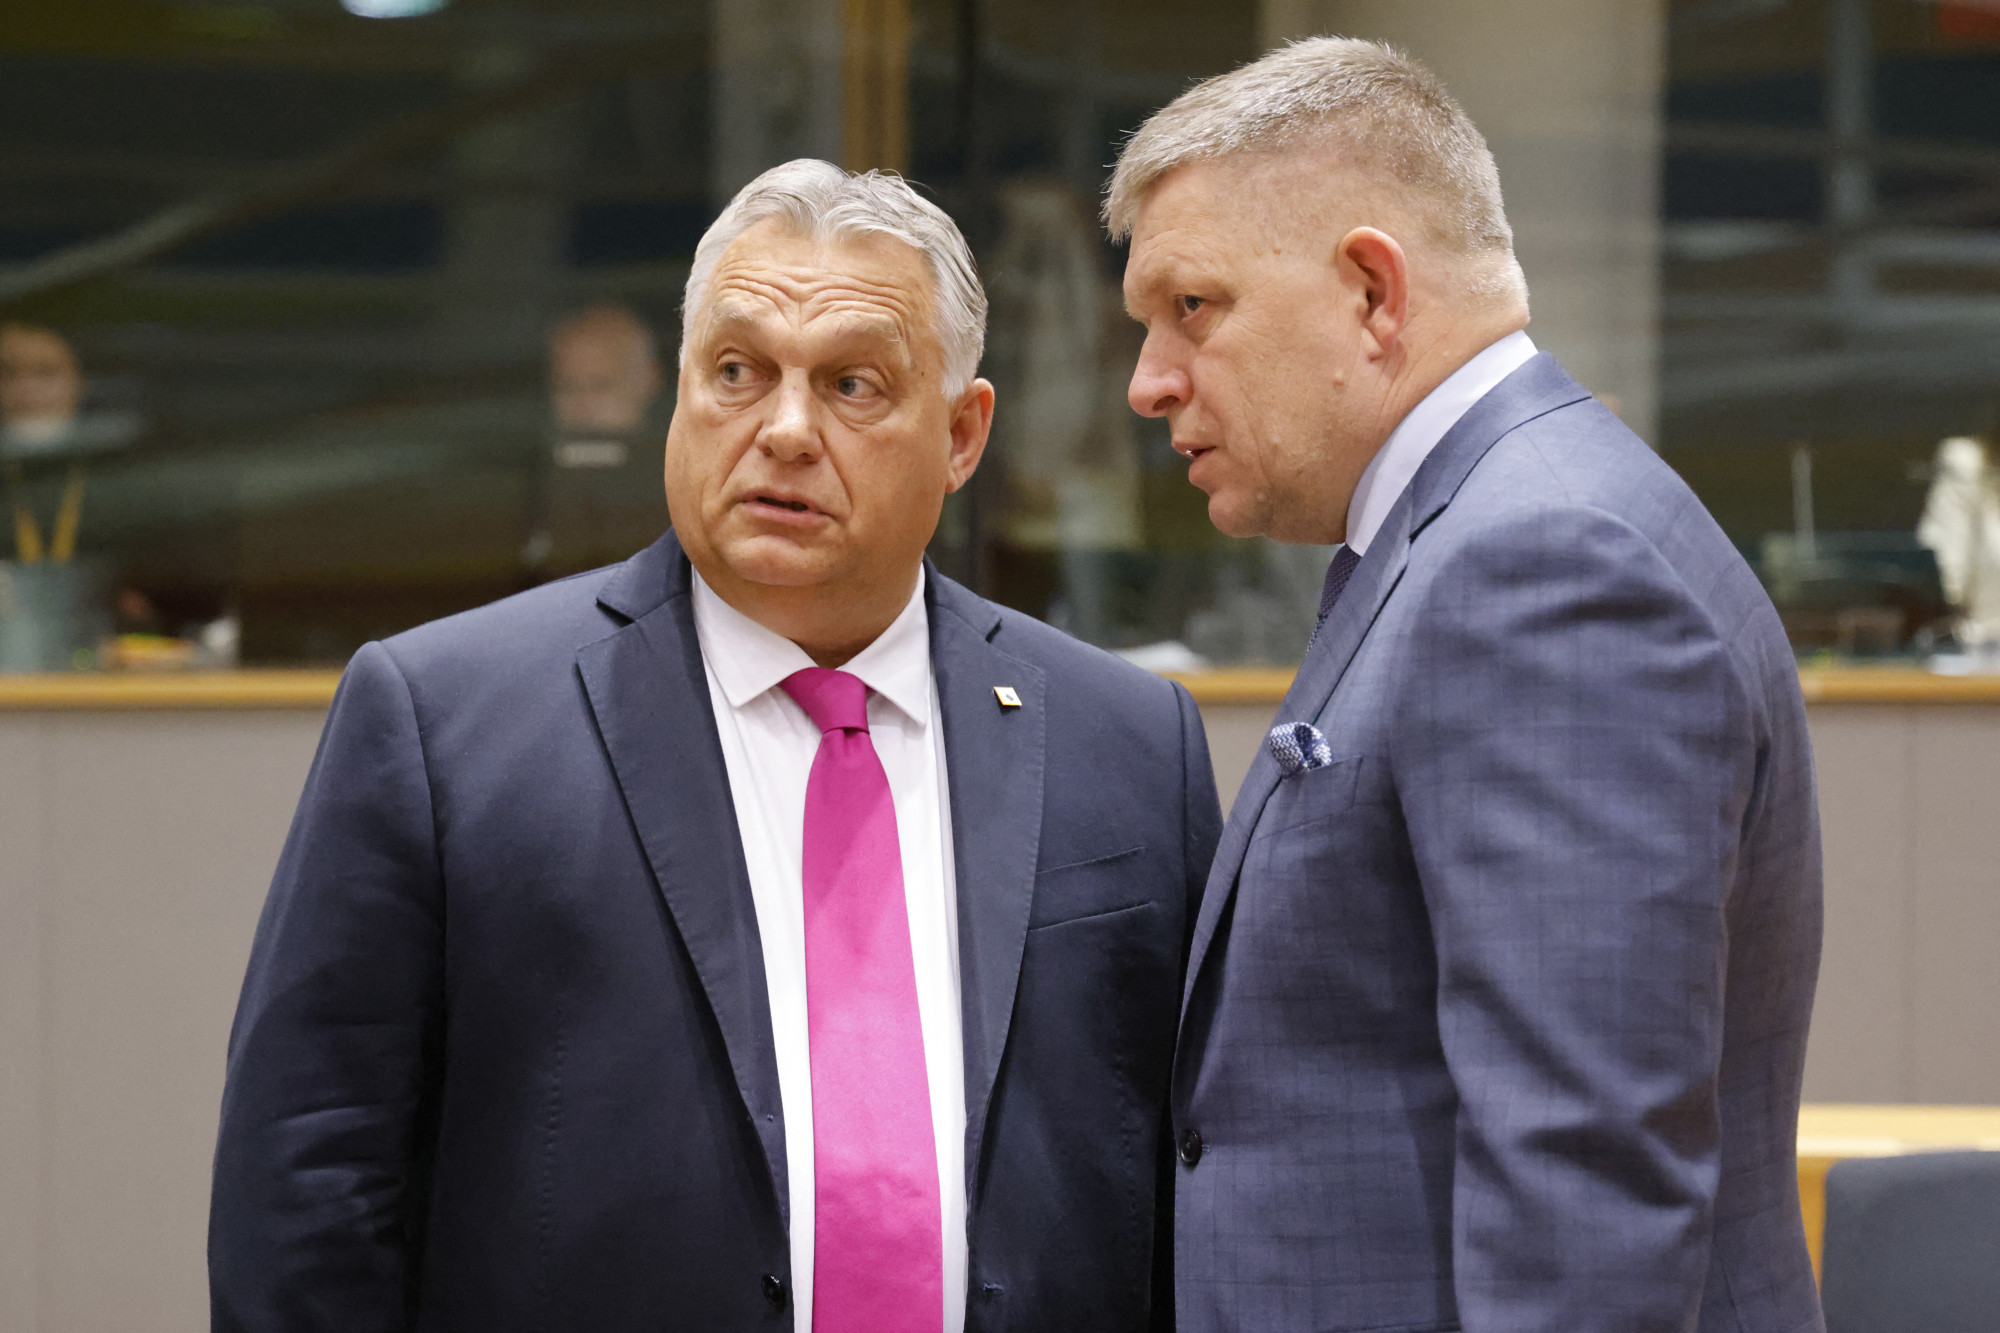 “Trójai falovak összetörnek”: Magyarország és Szlovákia az EU nyomására visszavonul ukránellenes pozícióiból